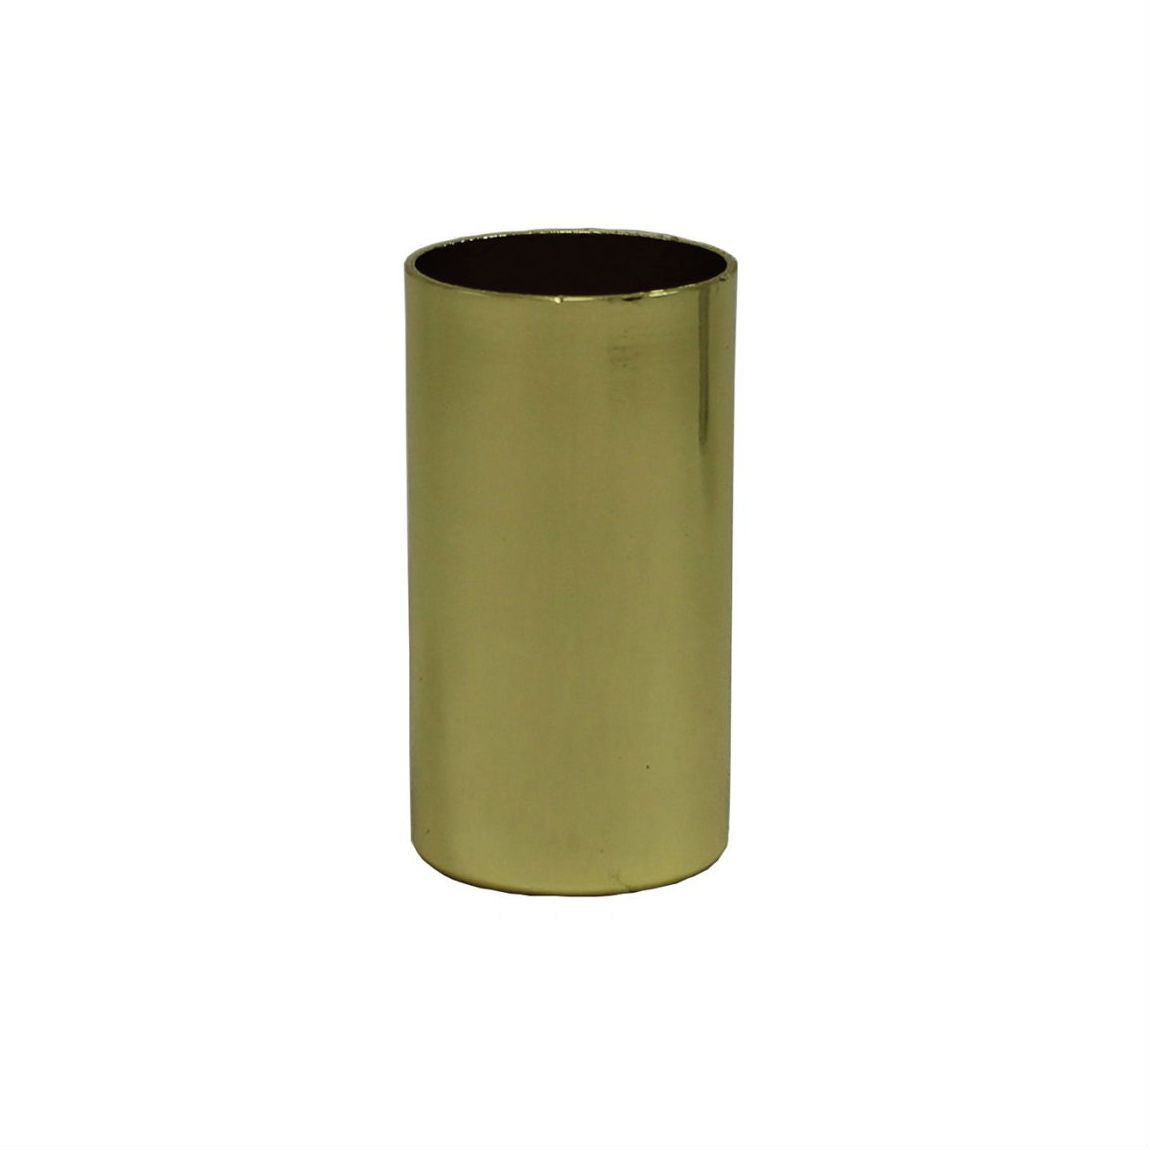 Brass Light Socket Cover for Candelabra base sockets